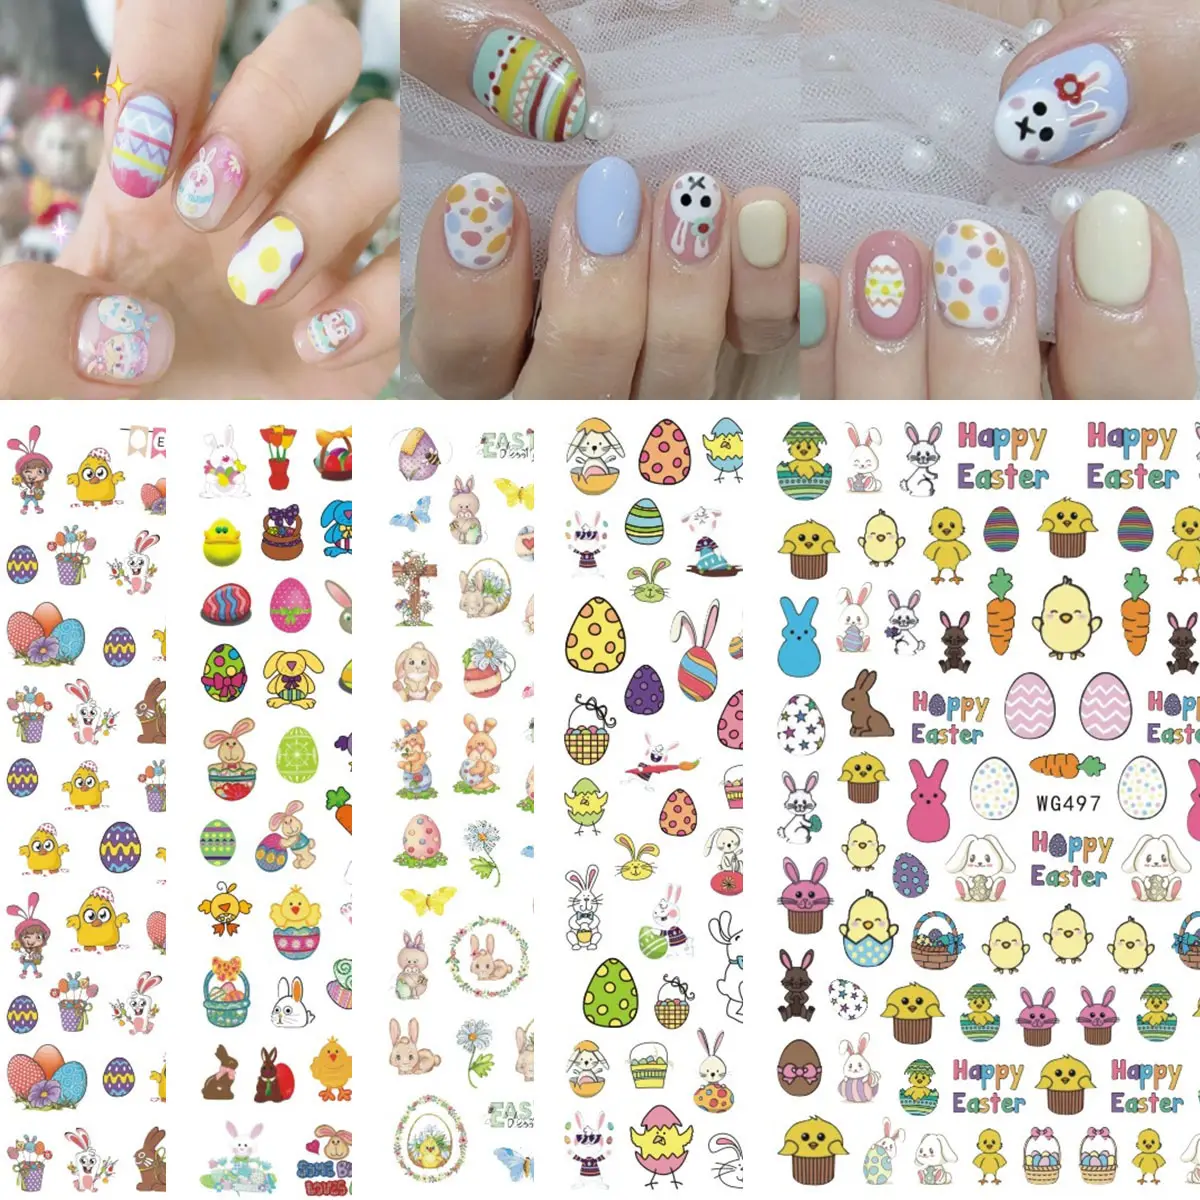 Suministros de uñas de Pascua, diseños de dibujos animados de huevo, conejo, autoadhesivo, decoración artística, pegatina de uñas de Pascua